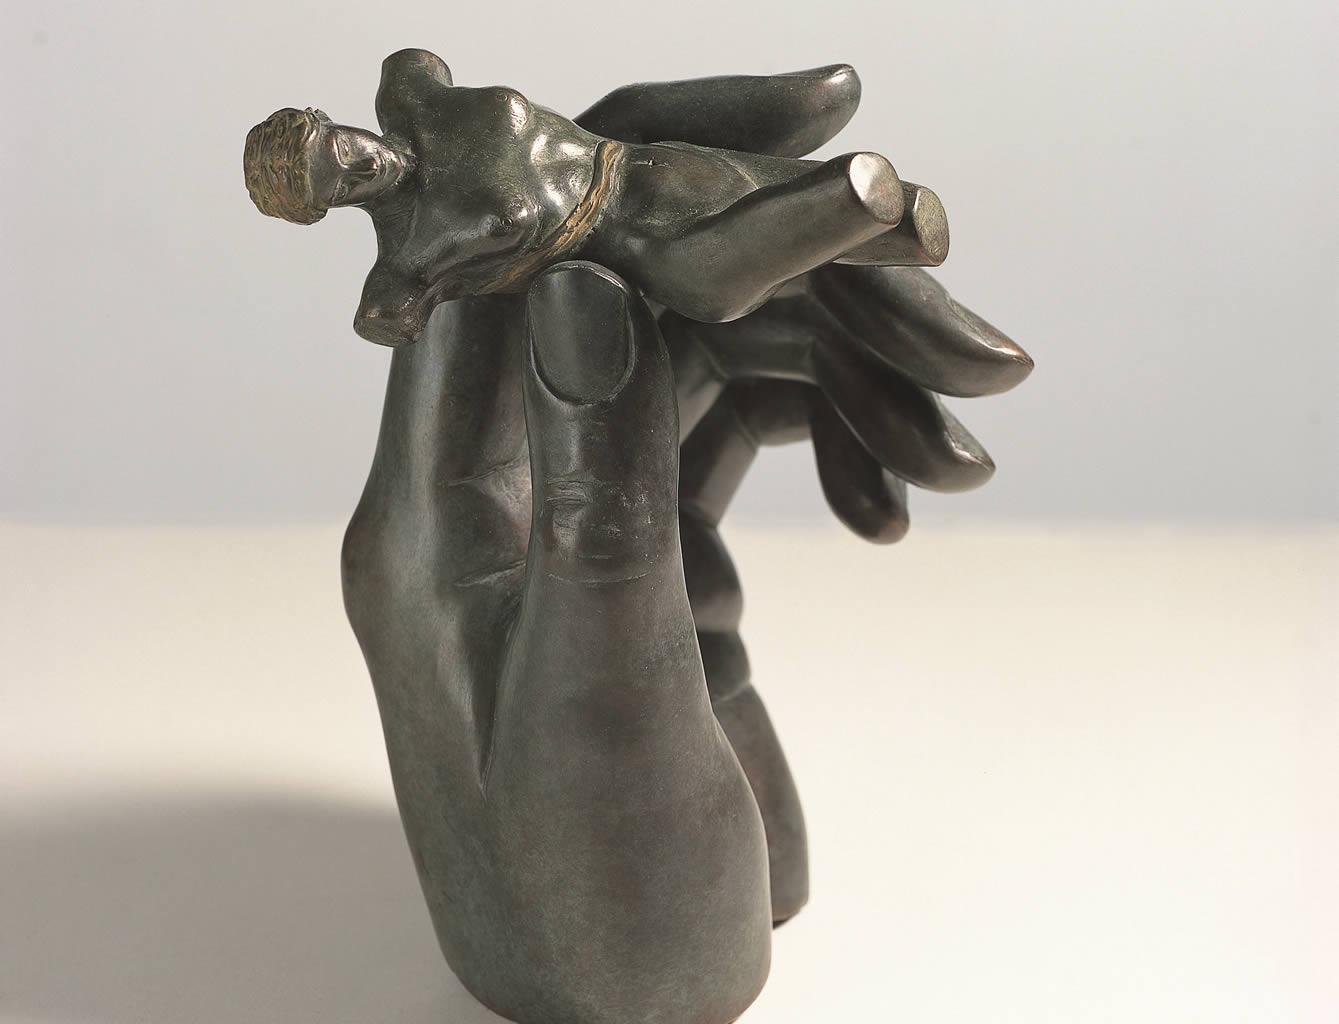 Sans titre Sculpture en bronze - Figure nue féminine réalisée à la main - Mythologie classique